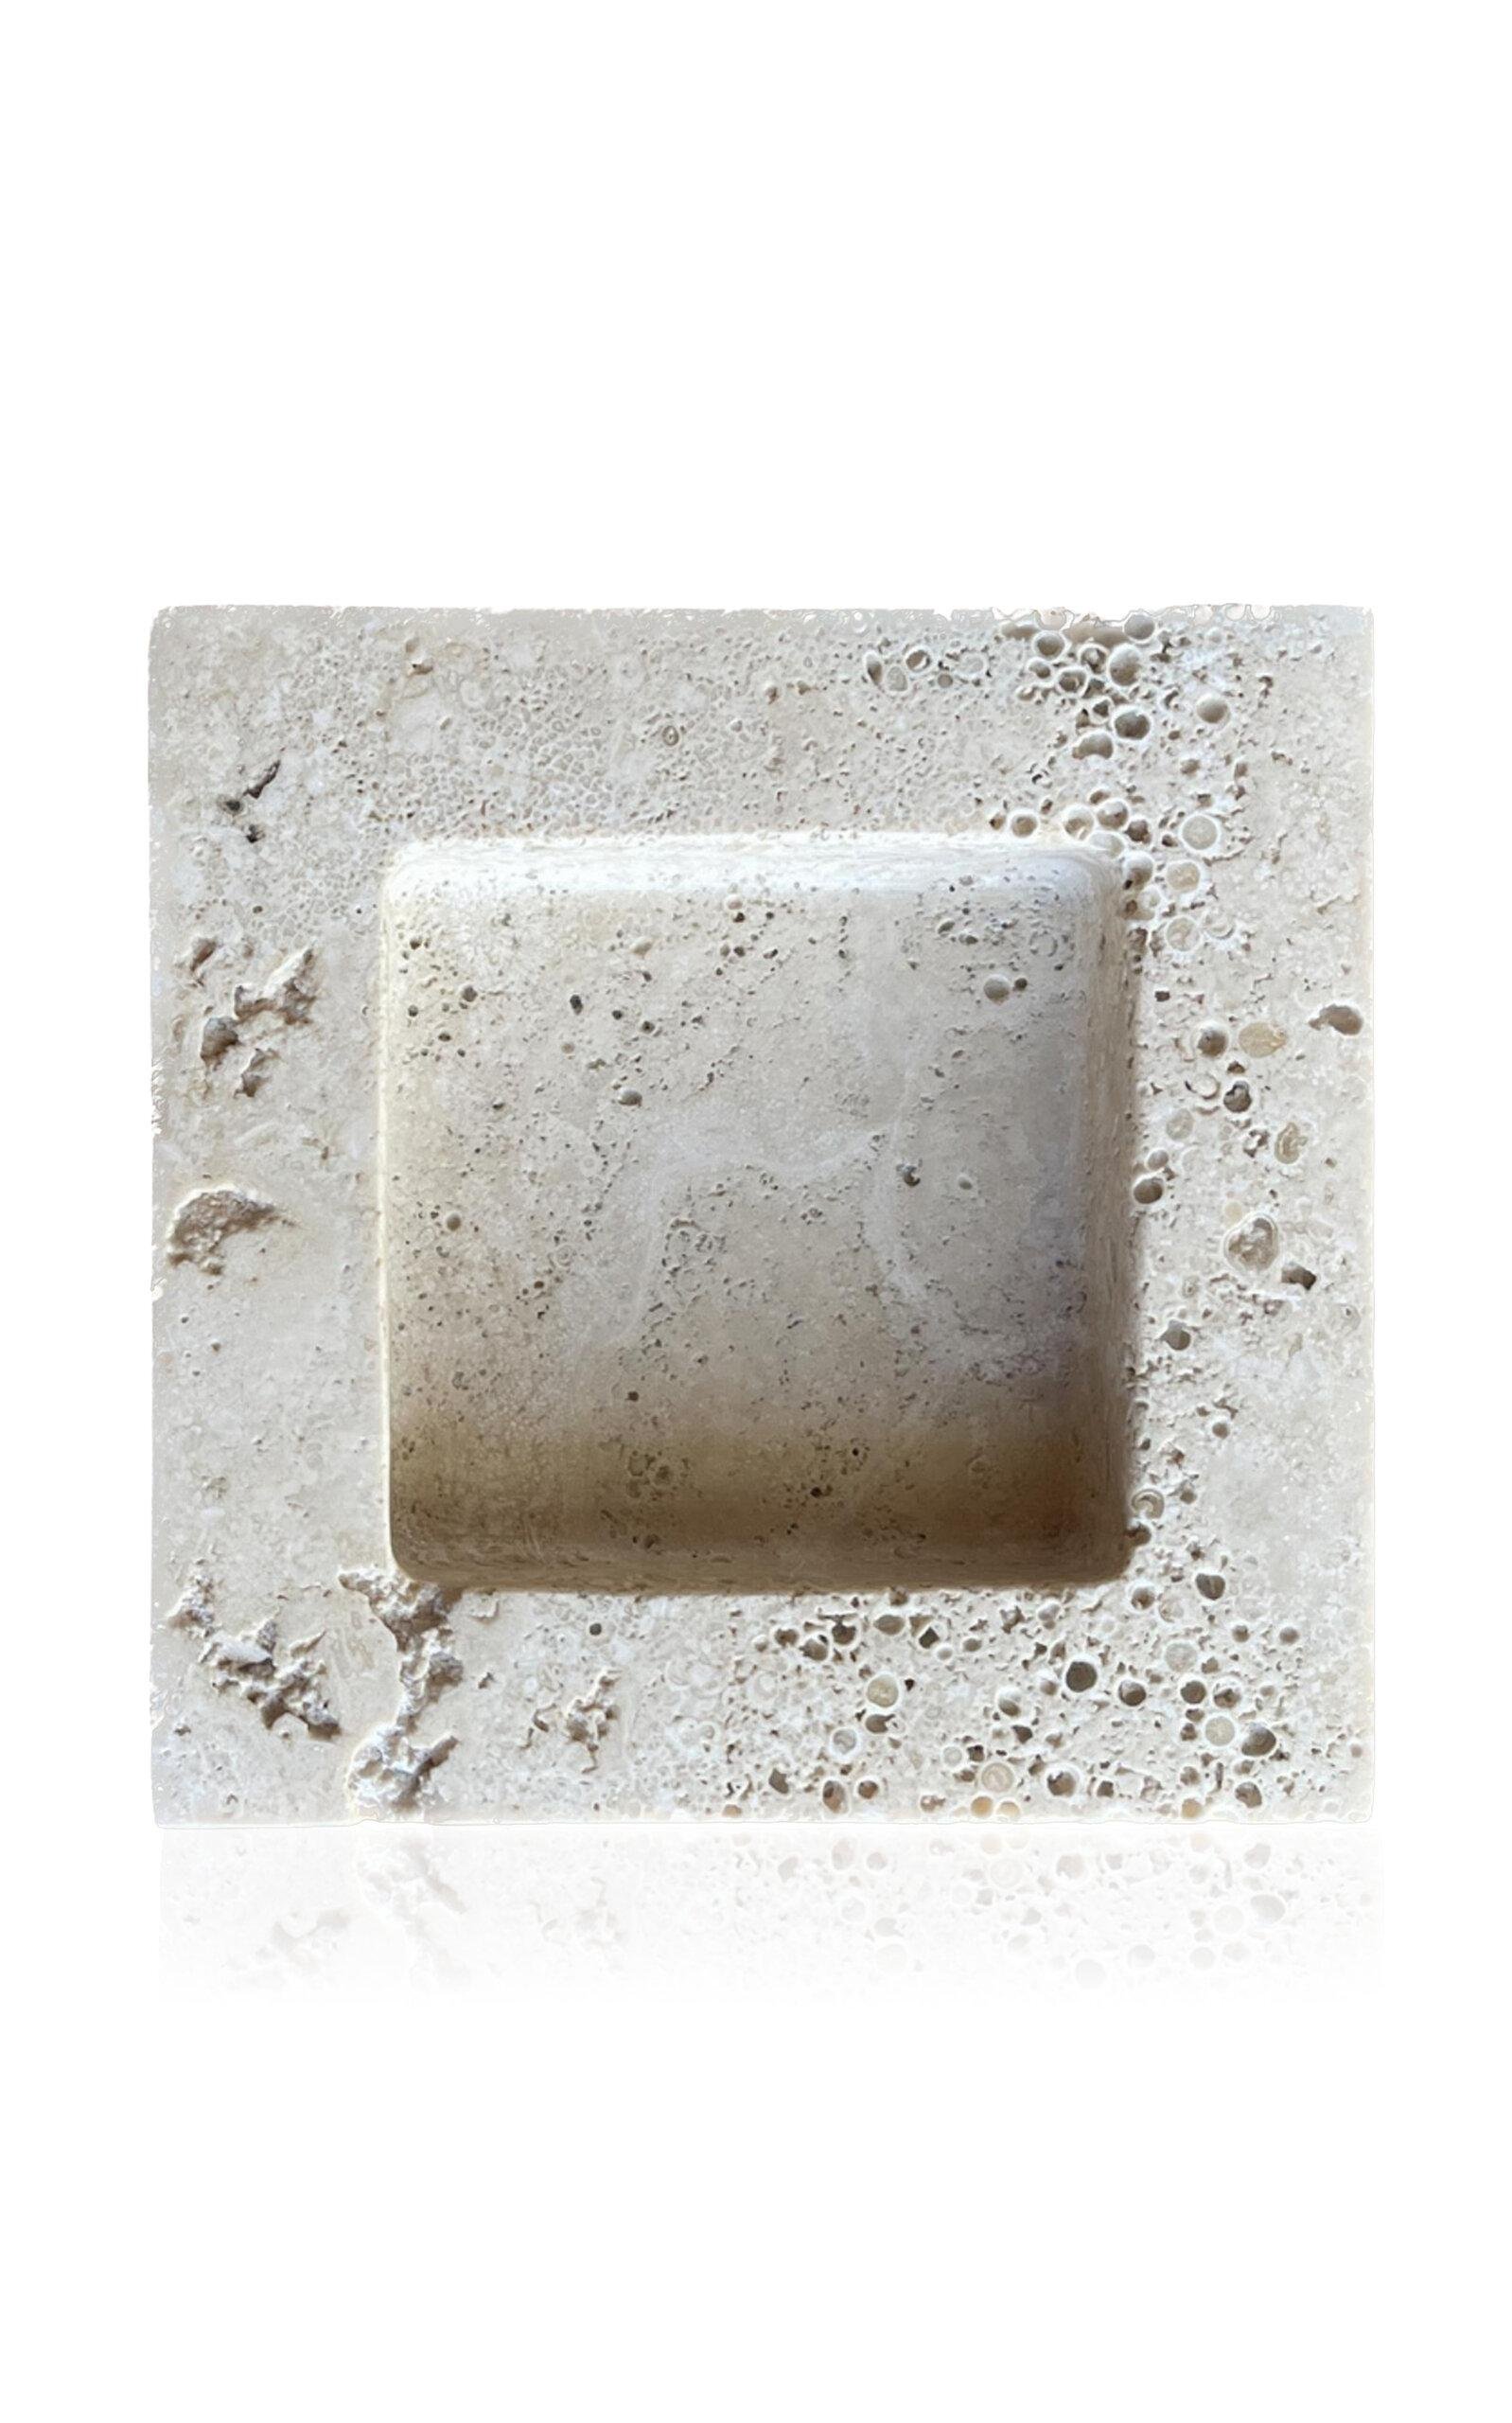 Anastasio Home - Teo Stone Tray - Neutral - Moda Operandi by ANASTASIO HOME